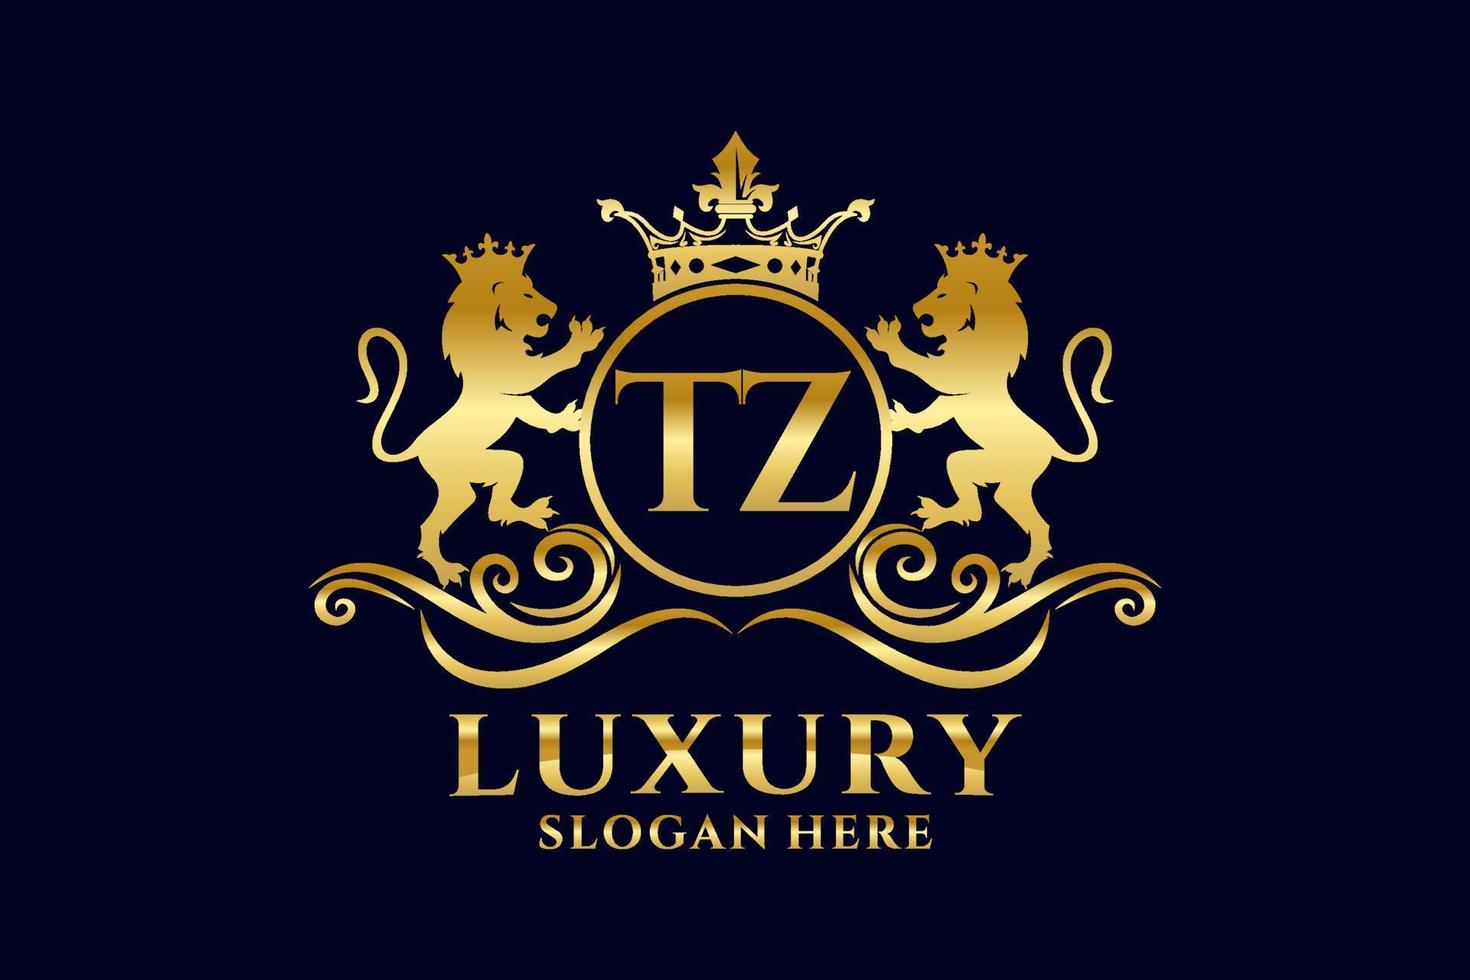 modelo de logotipo de luxo real de leão de letra tz inicial em arte vetorial para projetos de marca luxuosos e outras ilustrações vetoriais. vetor